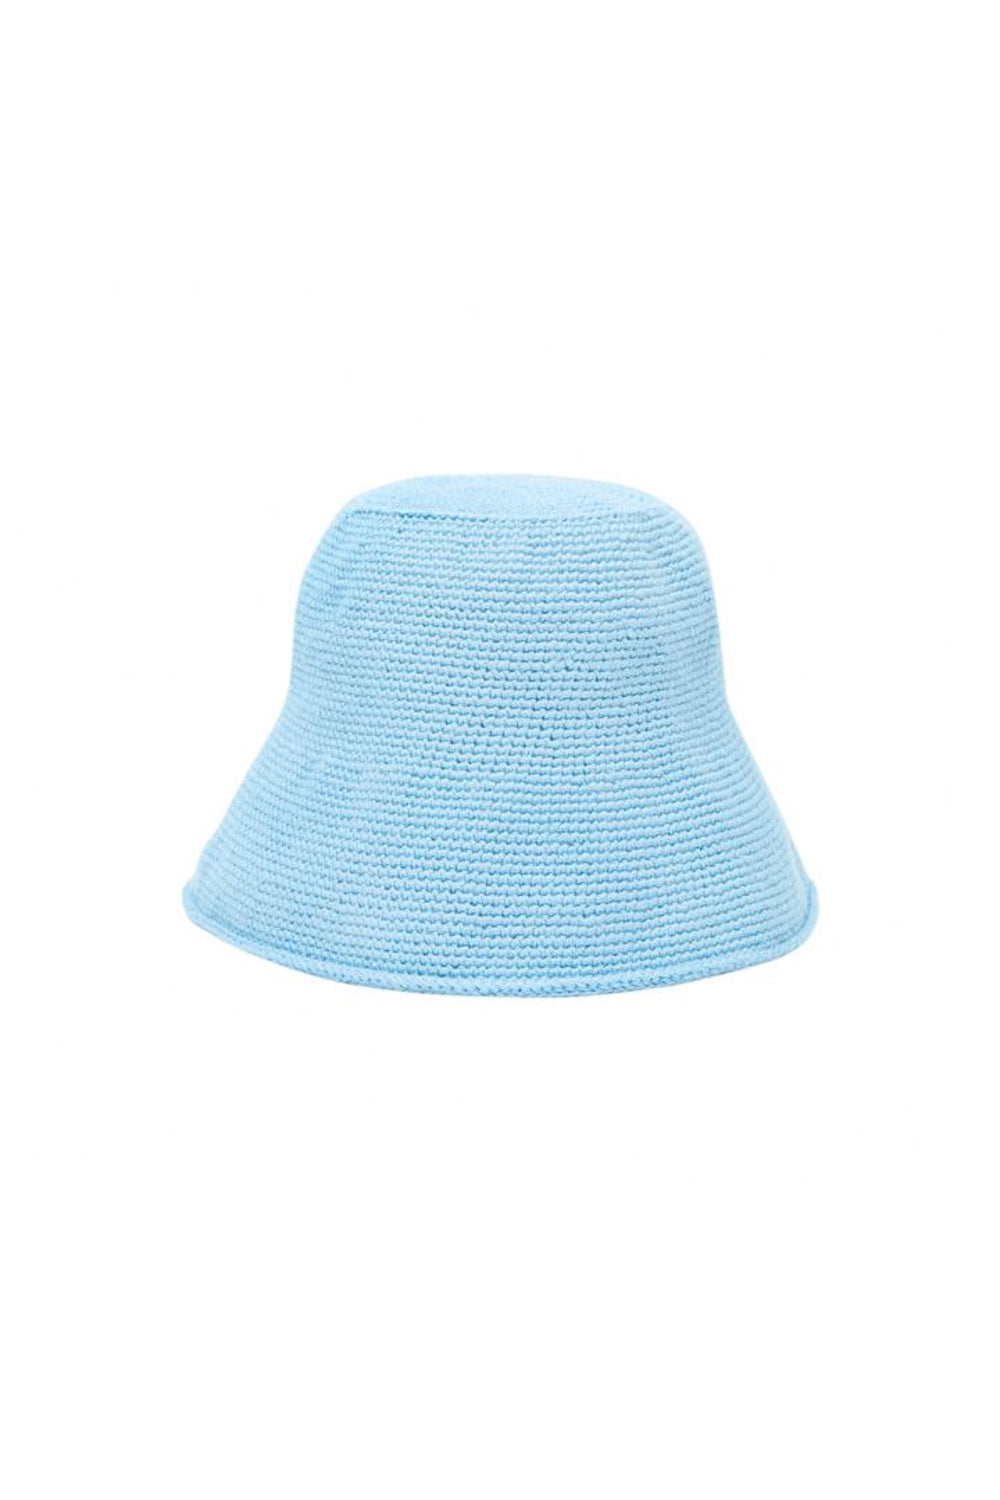 Blue Crochet Bucket Hat